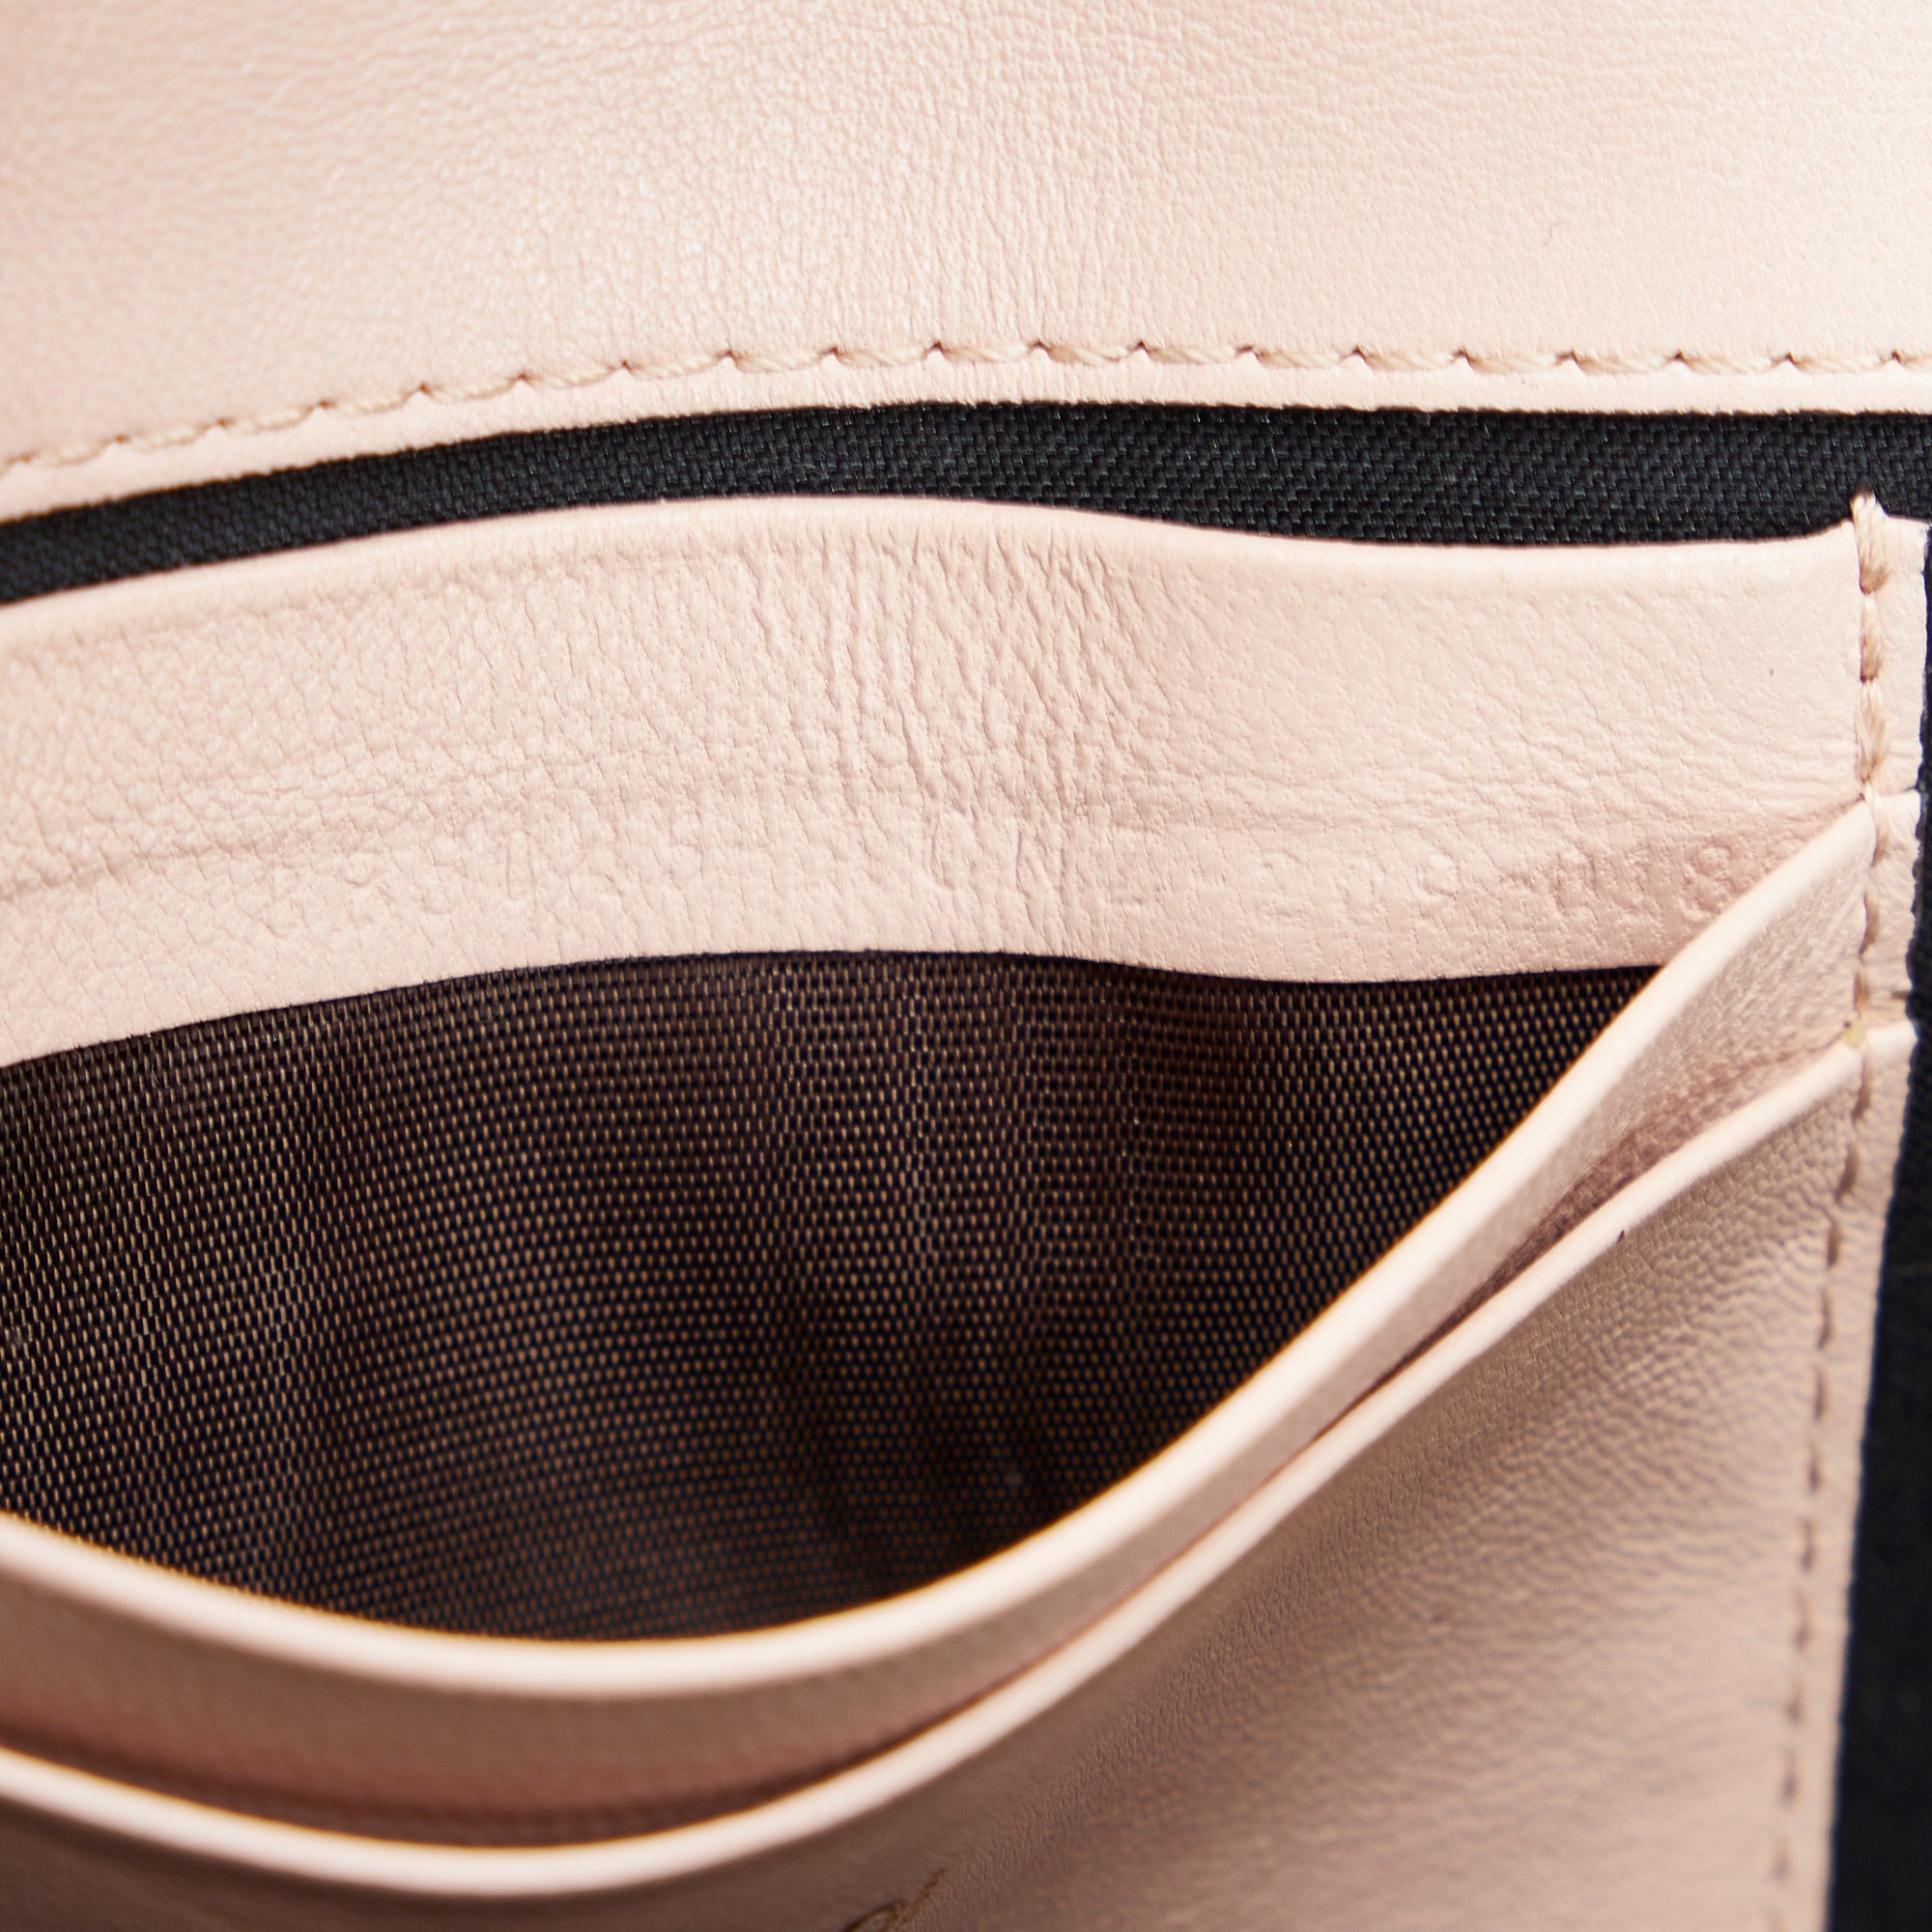 Pink Fendi Mini Baguette Chain Shoulder Bag - Designer Revival